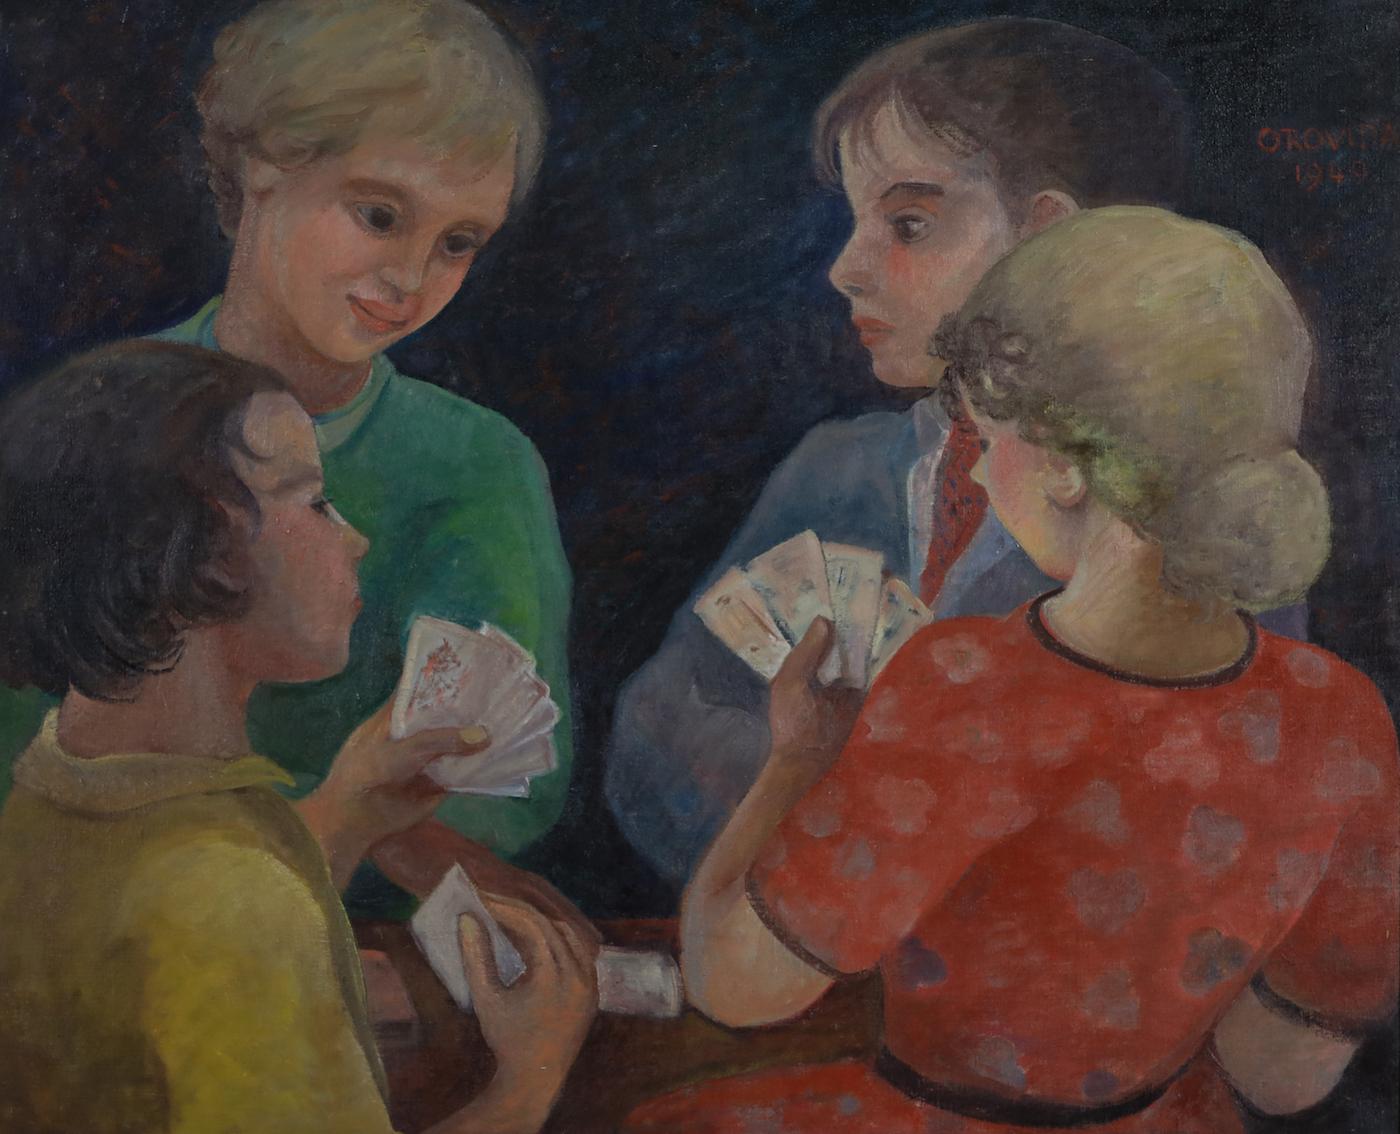 Ein Kartenspiel von Orovida Pissarro (1893-1968)
Öl auf Leinwand
59 x 72 cm (23 ¹/₄ x 28 ³/₈ Zoll)
Signiert und betitelt oben rechts Orovida 1949

Biographie des Künstlers
Orovida Camille Pissarro, das einzige Kind von Lucien und Esther Pissarro,